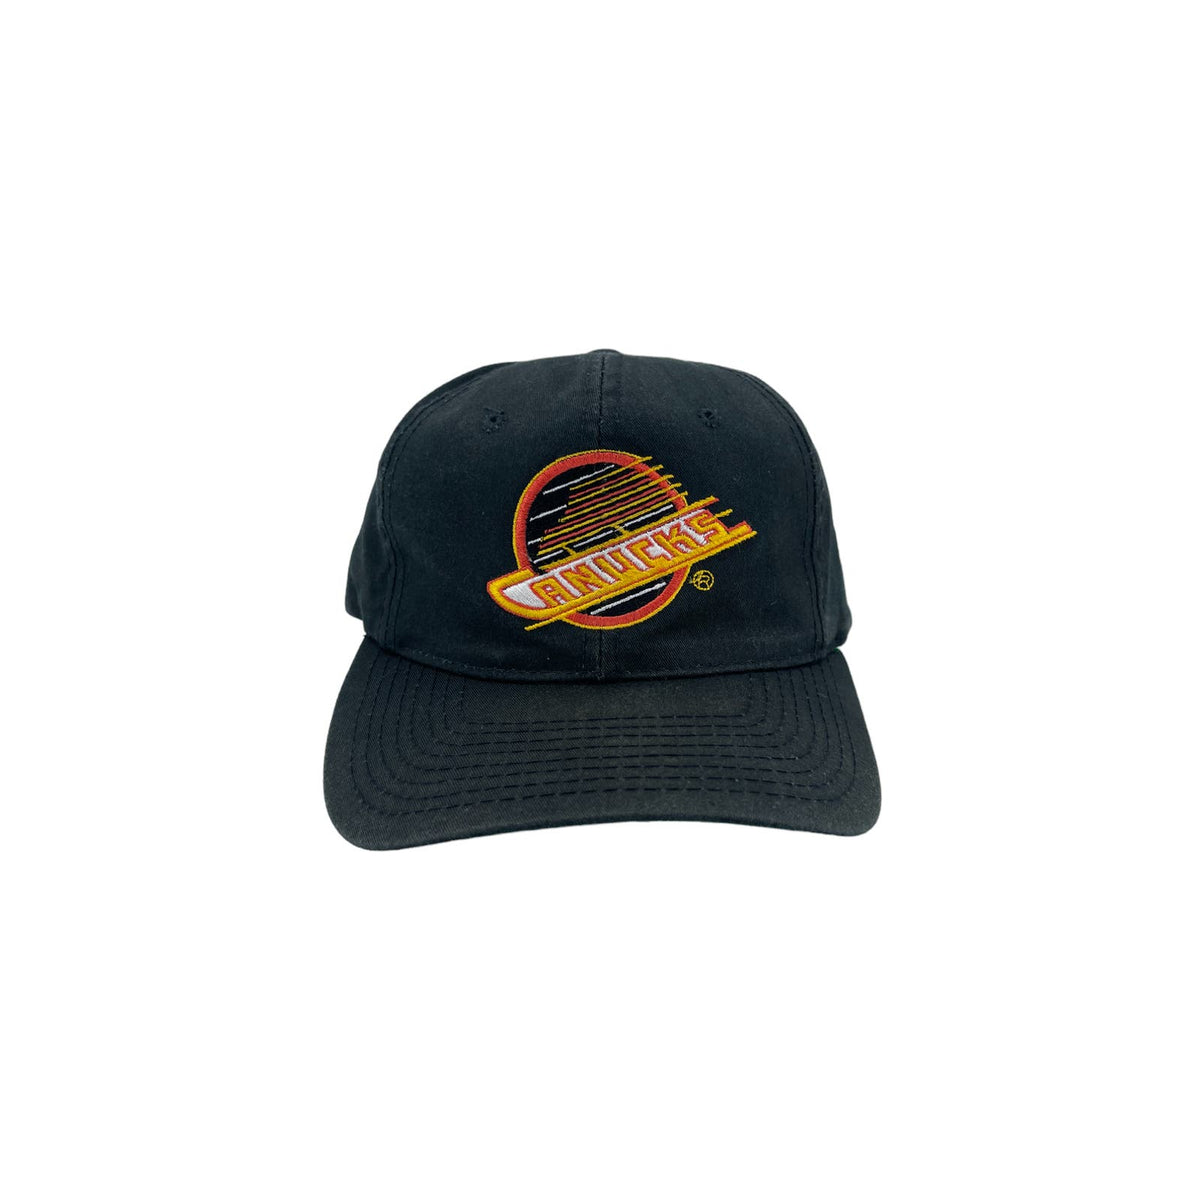 Vintage 1990's Starter Vancouver Canucks Embroidered Snapback Hat